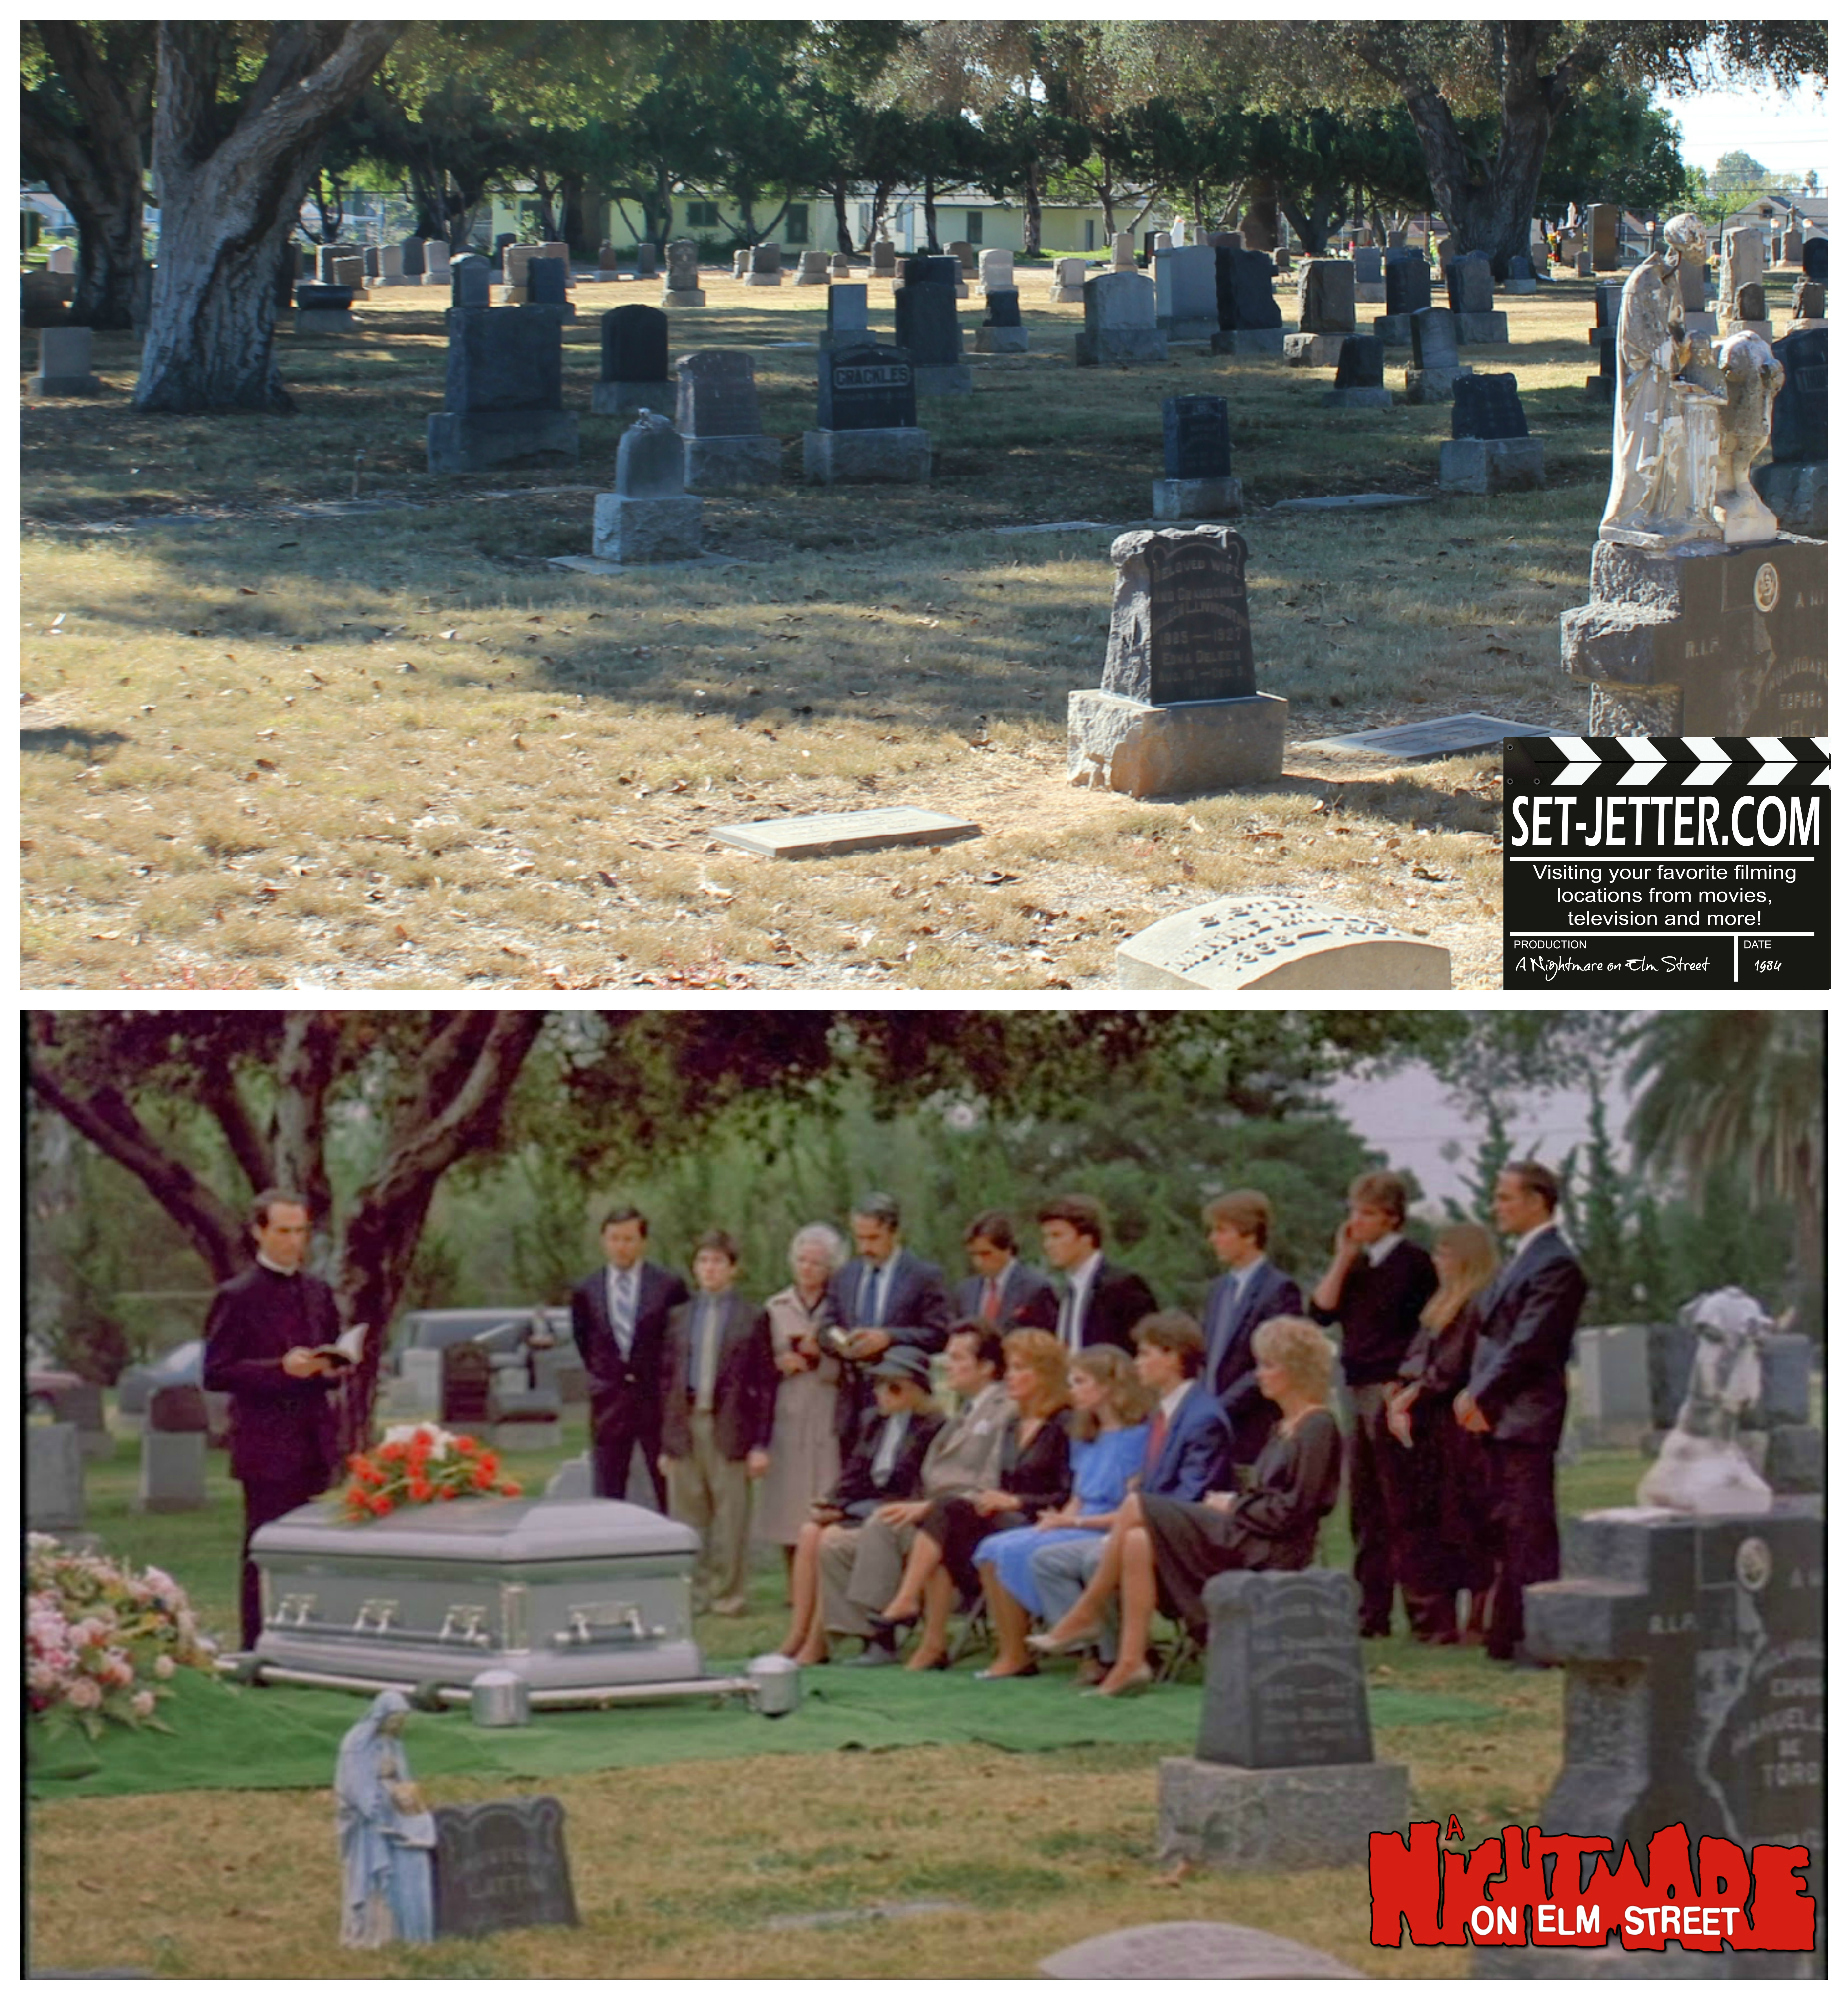 Nightmare on Elm Street comparison 23.jpg